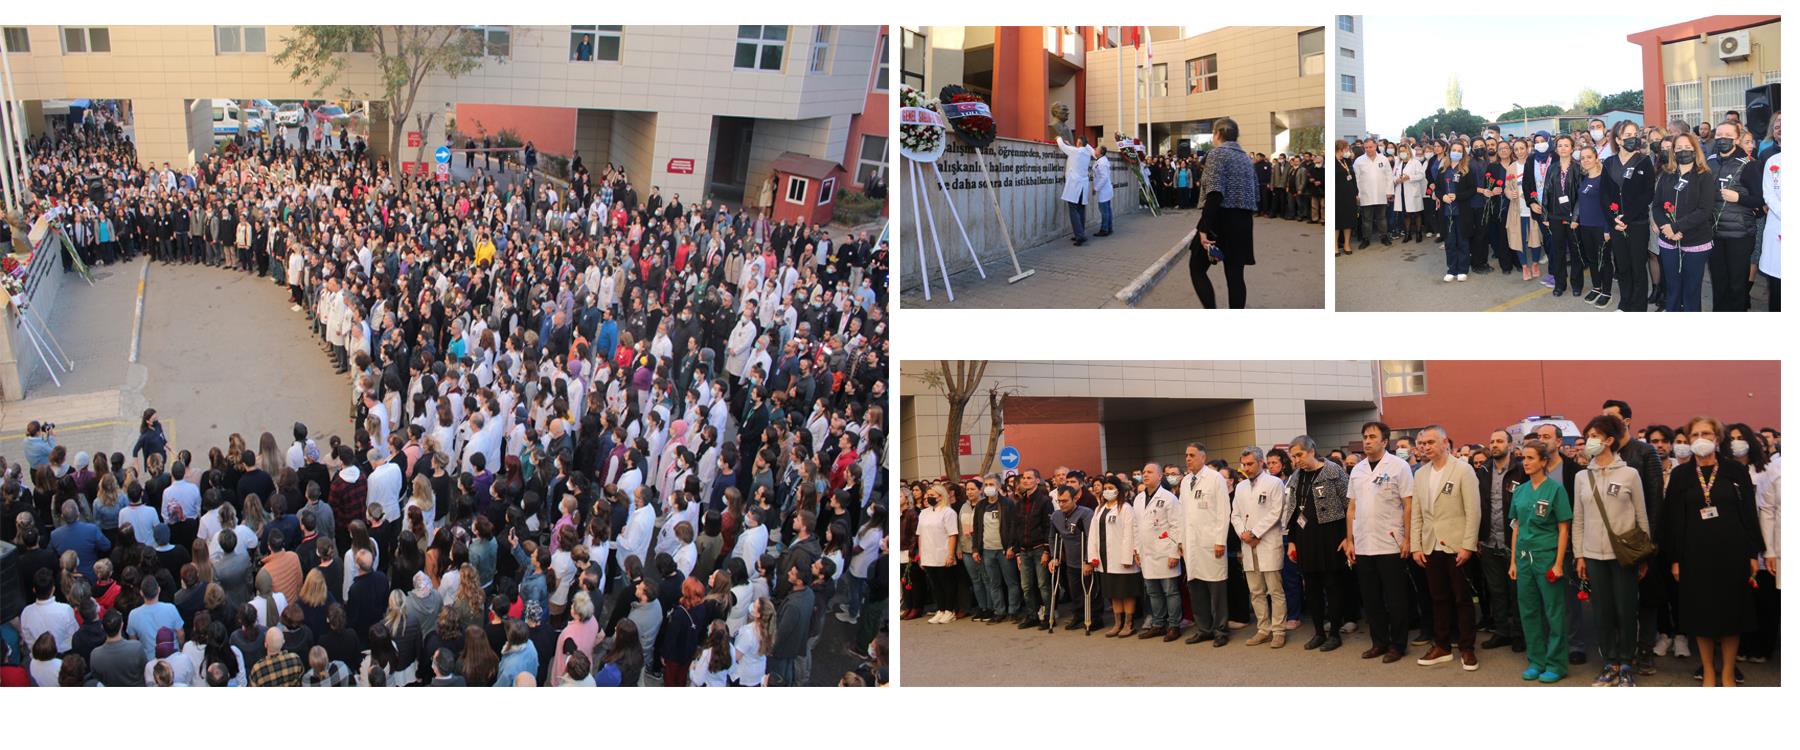 İ.K.Ç.Ü. Atatürk Eğitim ve Araştırma Hastanesi’nde 10 Kasım Atatürk’ü Anma Günü dolayısıyla Tören Düzenlenmiştir.